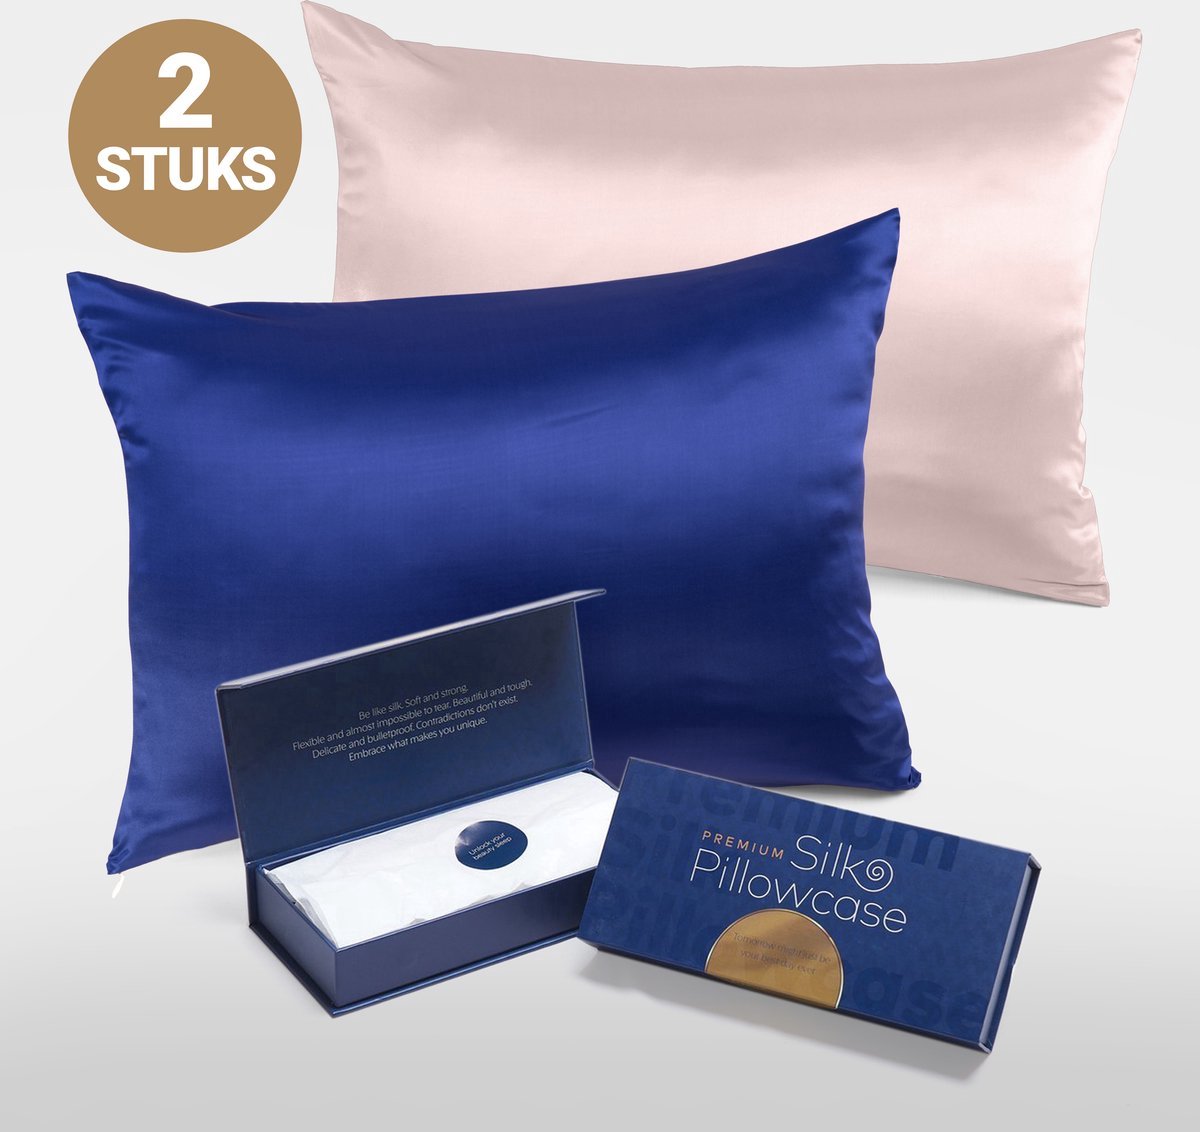 Slowwave Premium Silk Pillowcase - Extra voordelig colorpack: Cloud Burst en Pink Swan (lichtroze) - Ervaar het beste zijden kussensloop - 100% Mulberry zijde - 22 momme - Hoogste kwaliteit (grade 6A) - 60x70cm